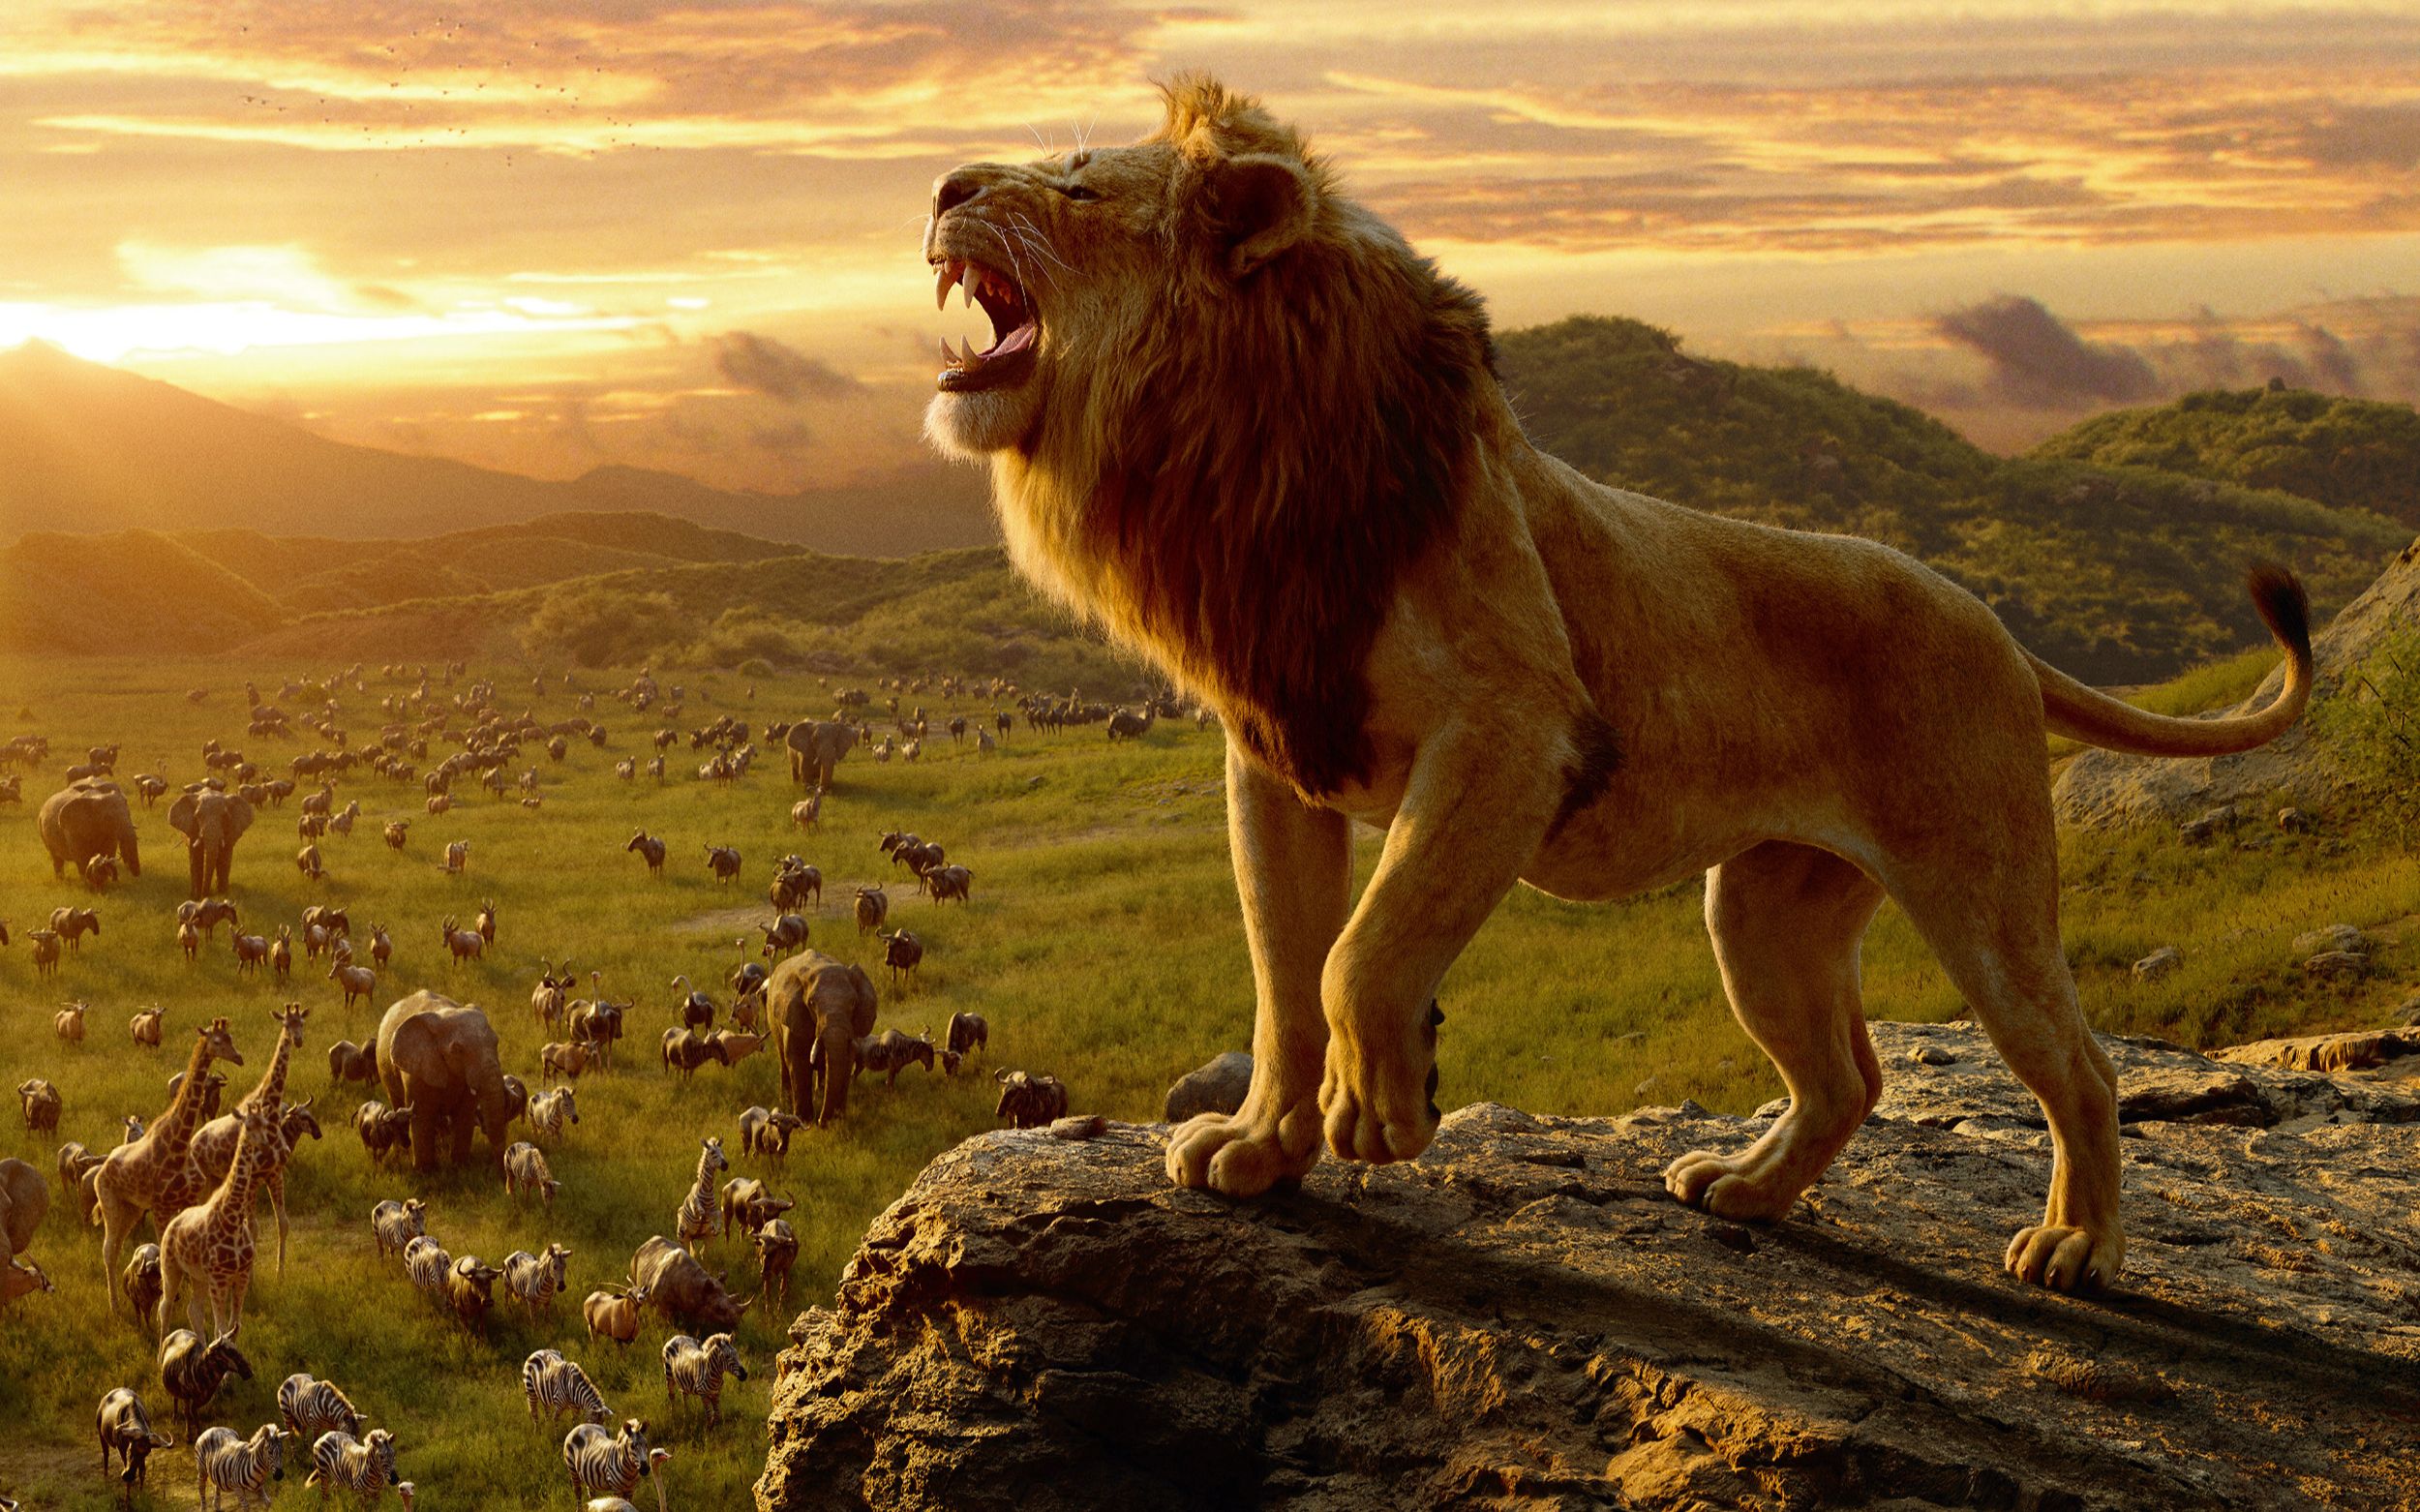 《狮子王》中国定档预告片 定档7月12日提前北美上映